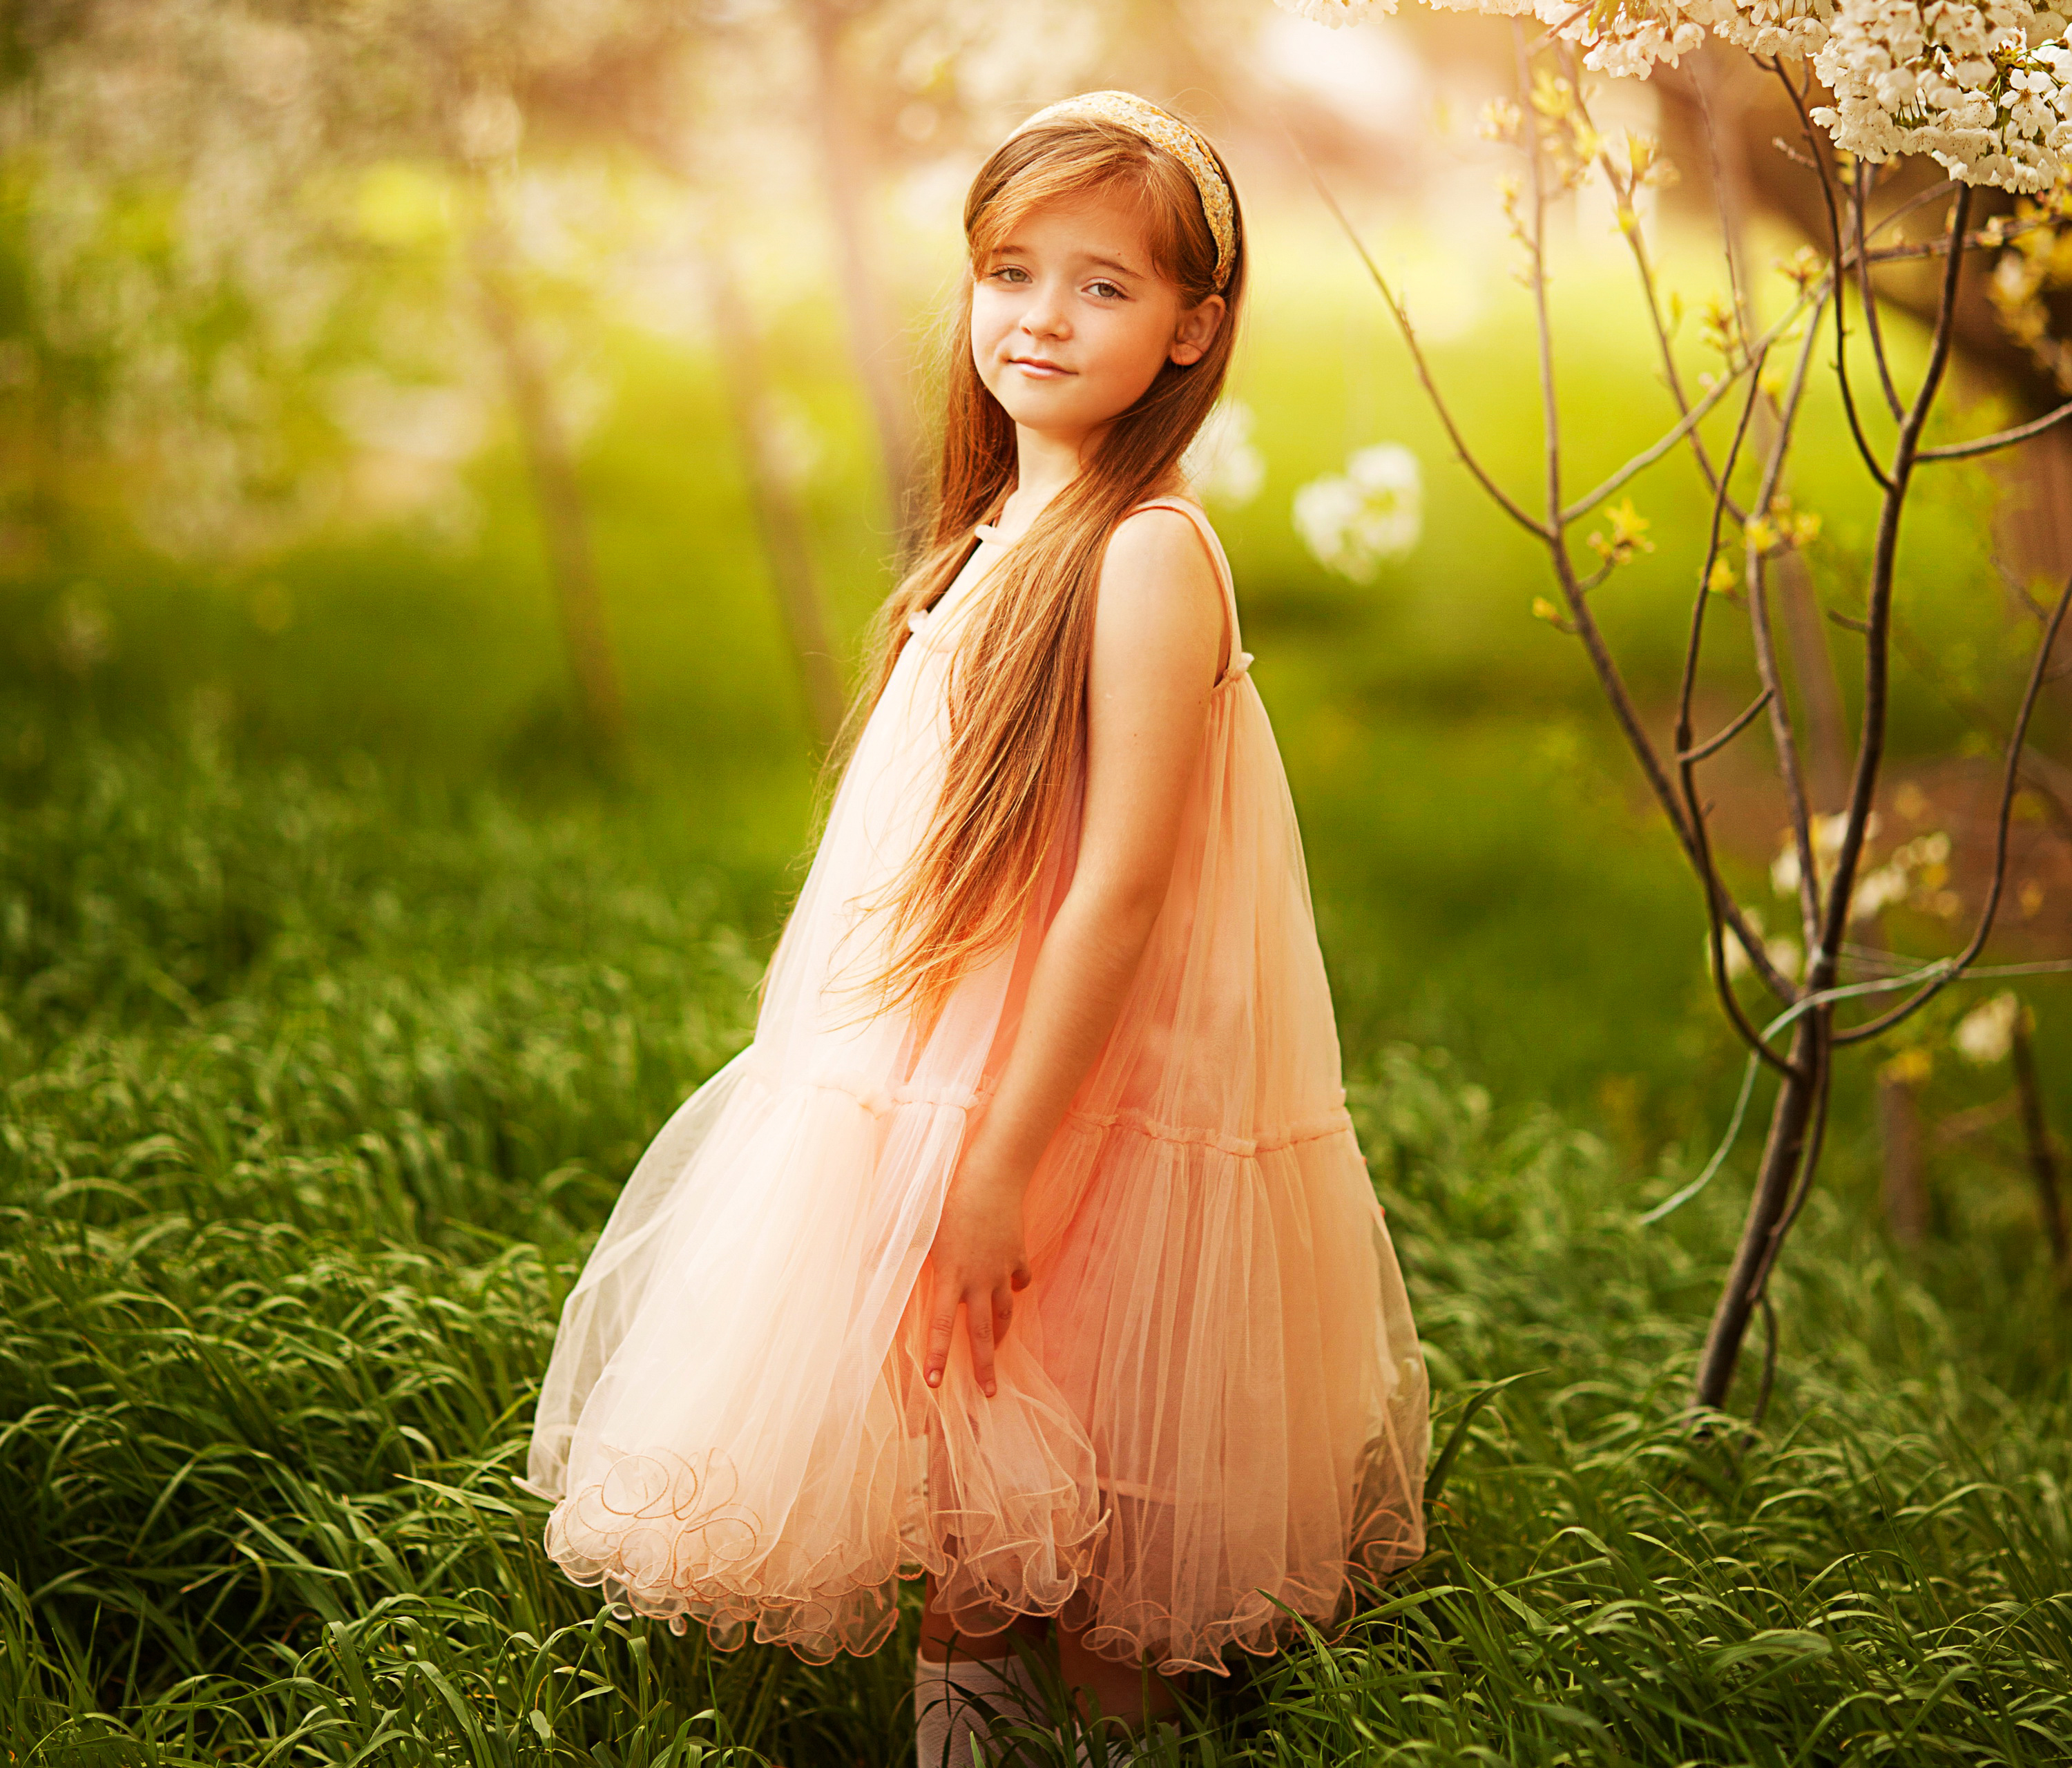 Показать маленьких девушек. Девочка. Девочка в платье на траве. Маленькая девочка природа. Красивые картинки для девочек.